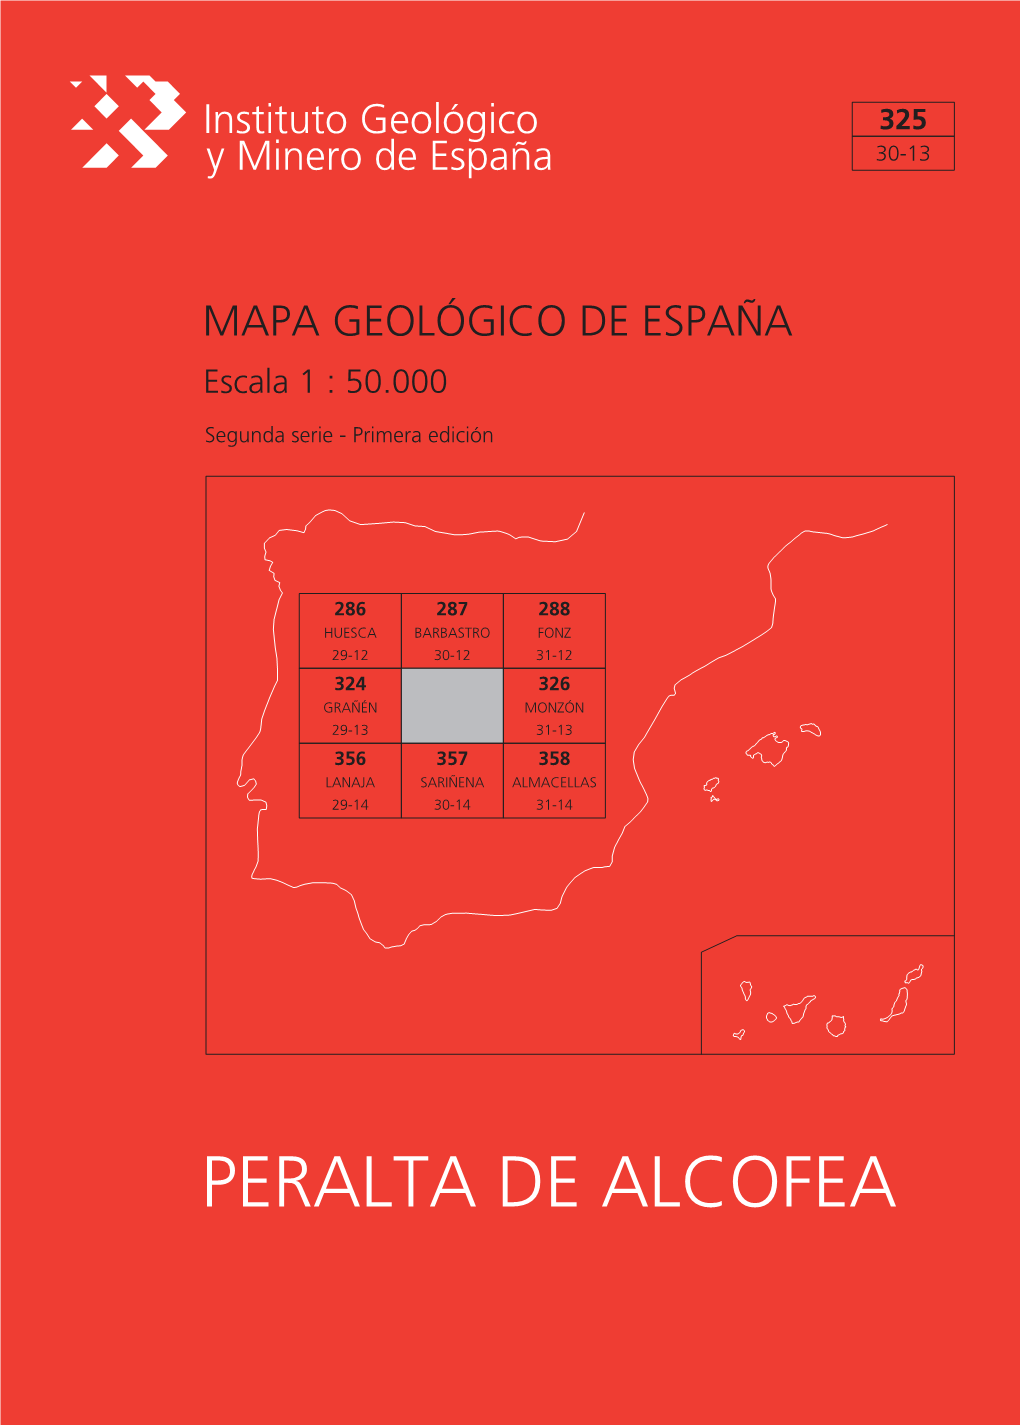 PERALTA DE ALCOFEA MAPA GEOLÓGICO DE ESPAÑA Escala 1:50.000